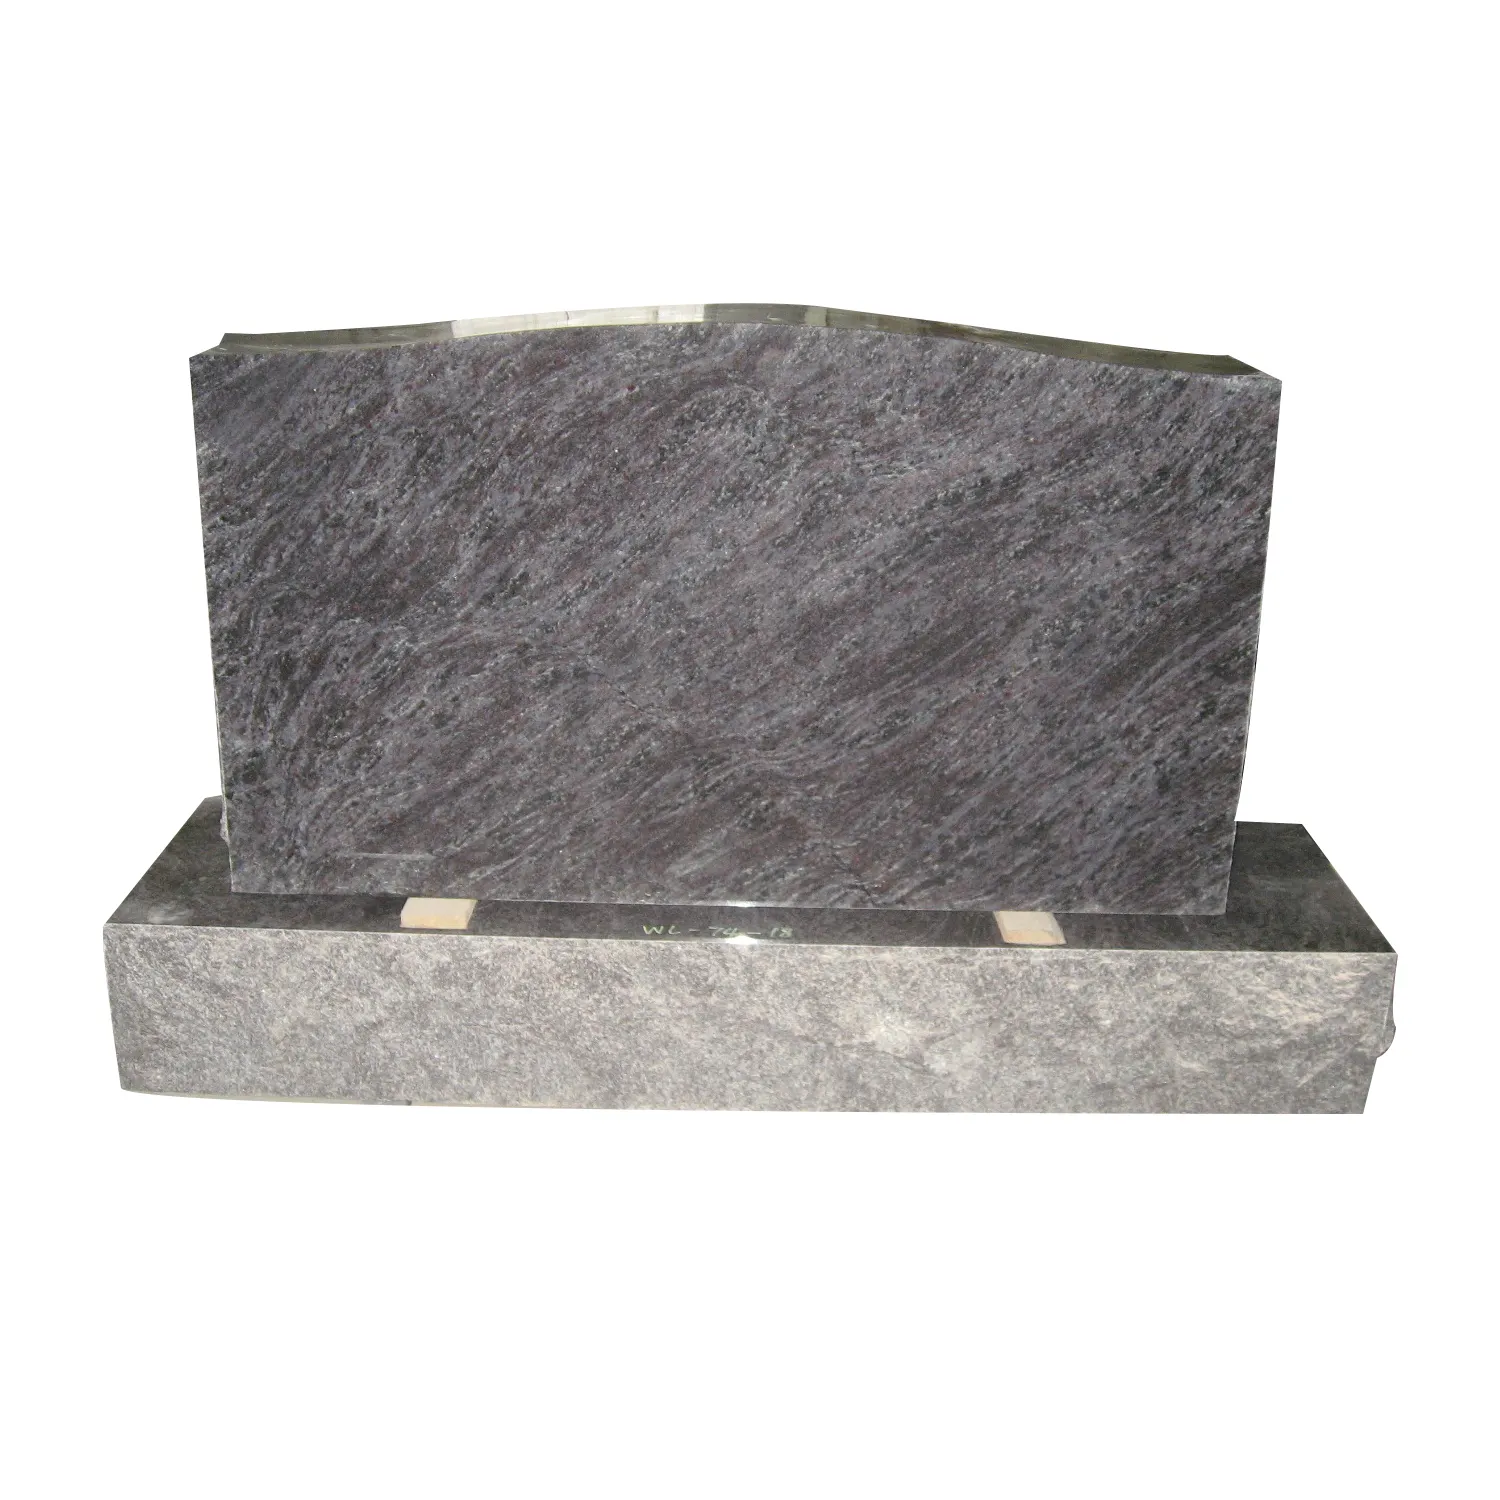 Специальный дизайн, китайский камень для высококачественного белого гранита, может быть изготовлен на заказ.